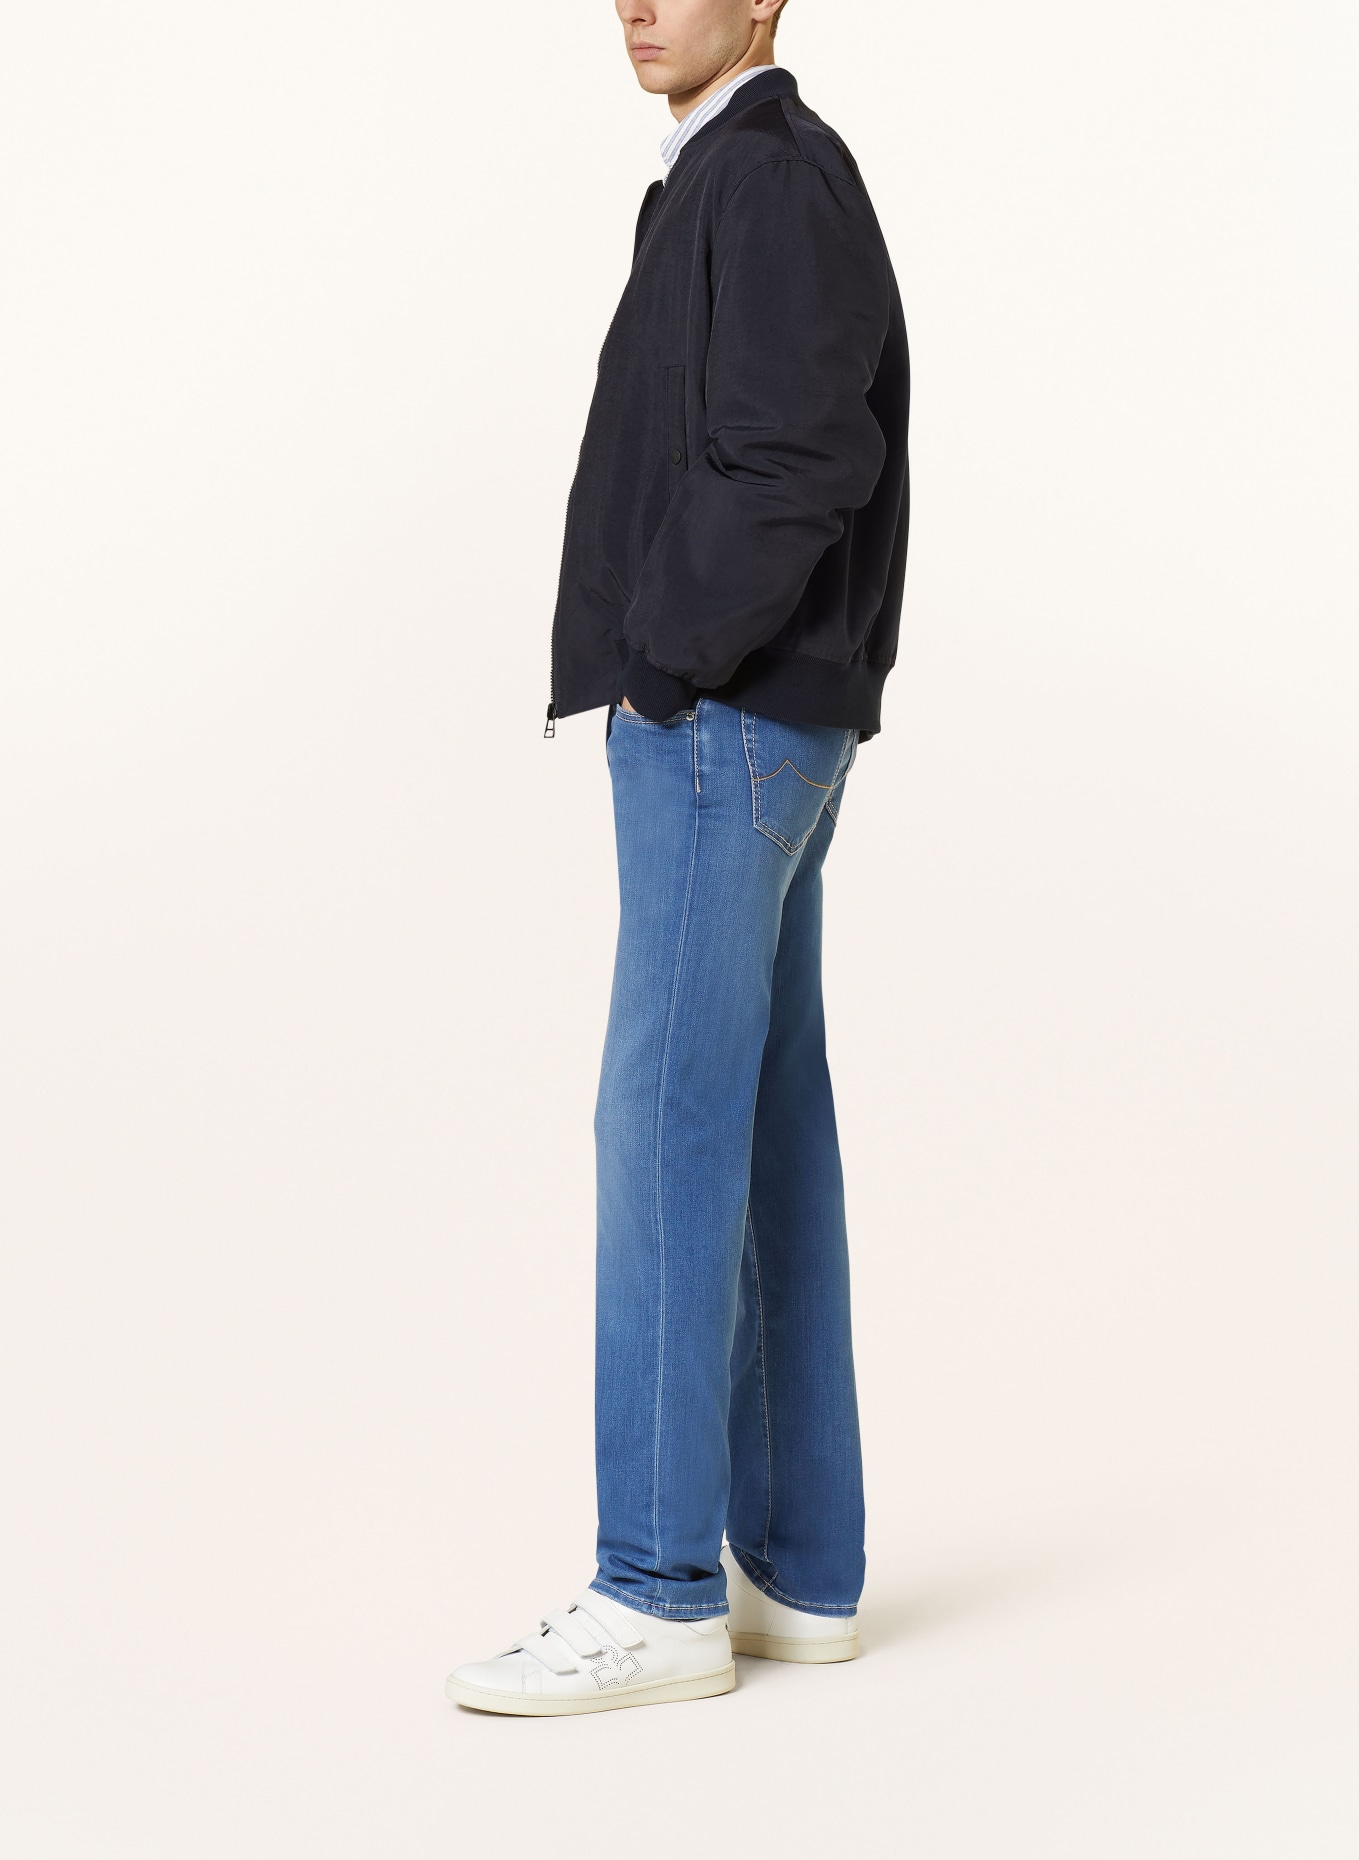 JACOB COHEN Jeans BARD slim fit, Color: 753D Light Blue (Image 4)